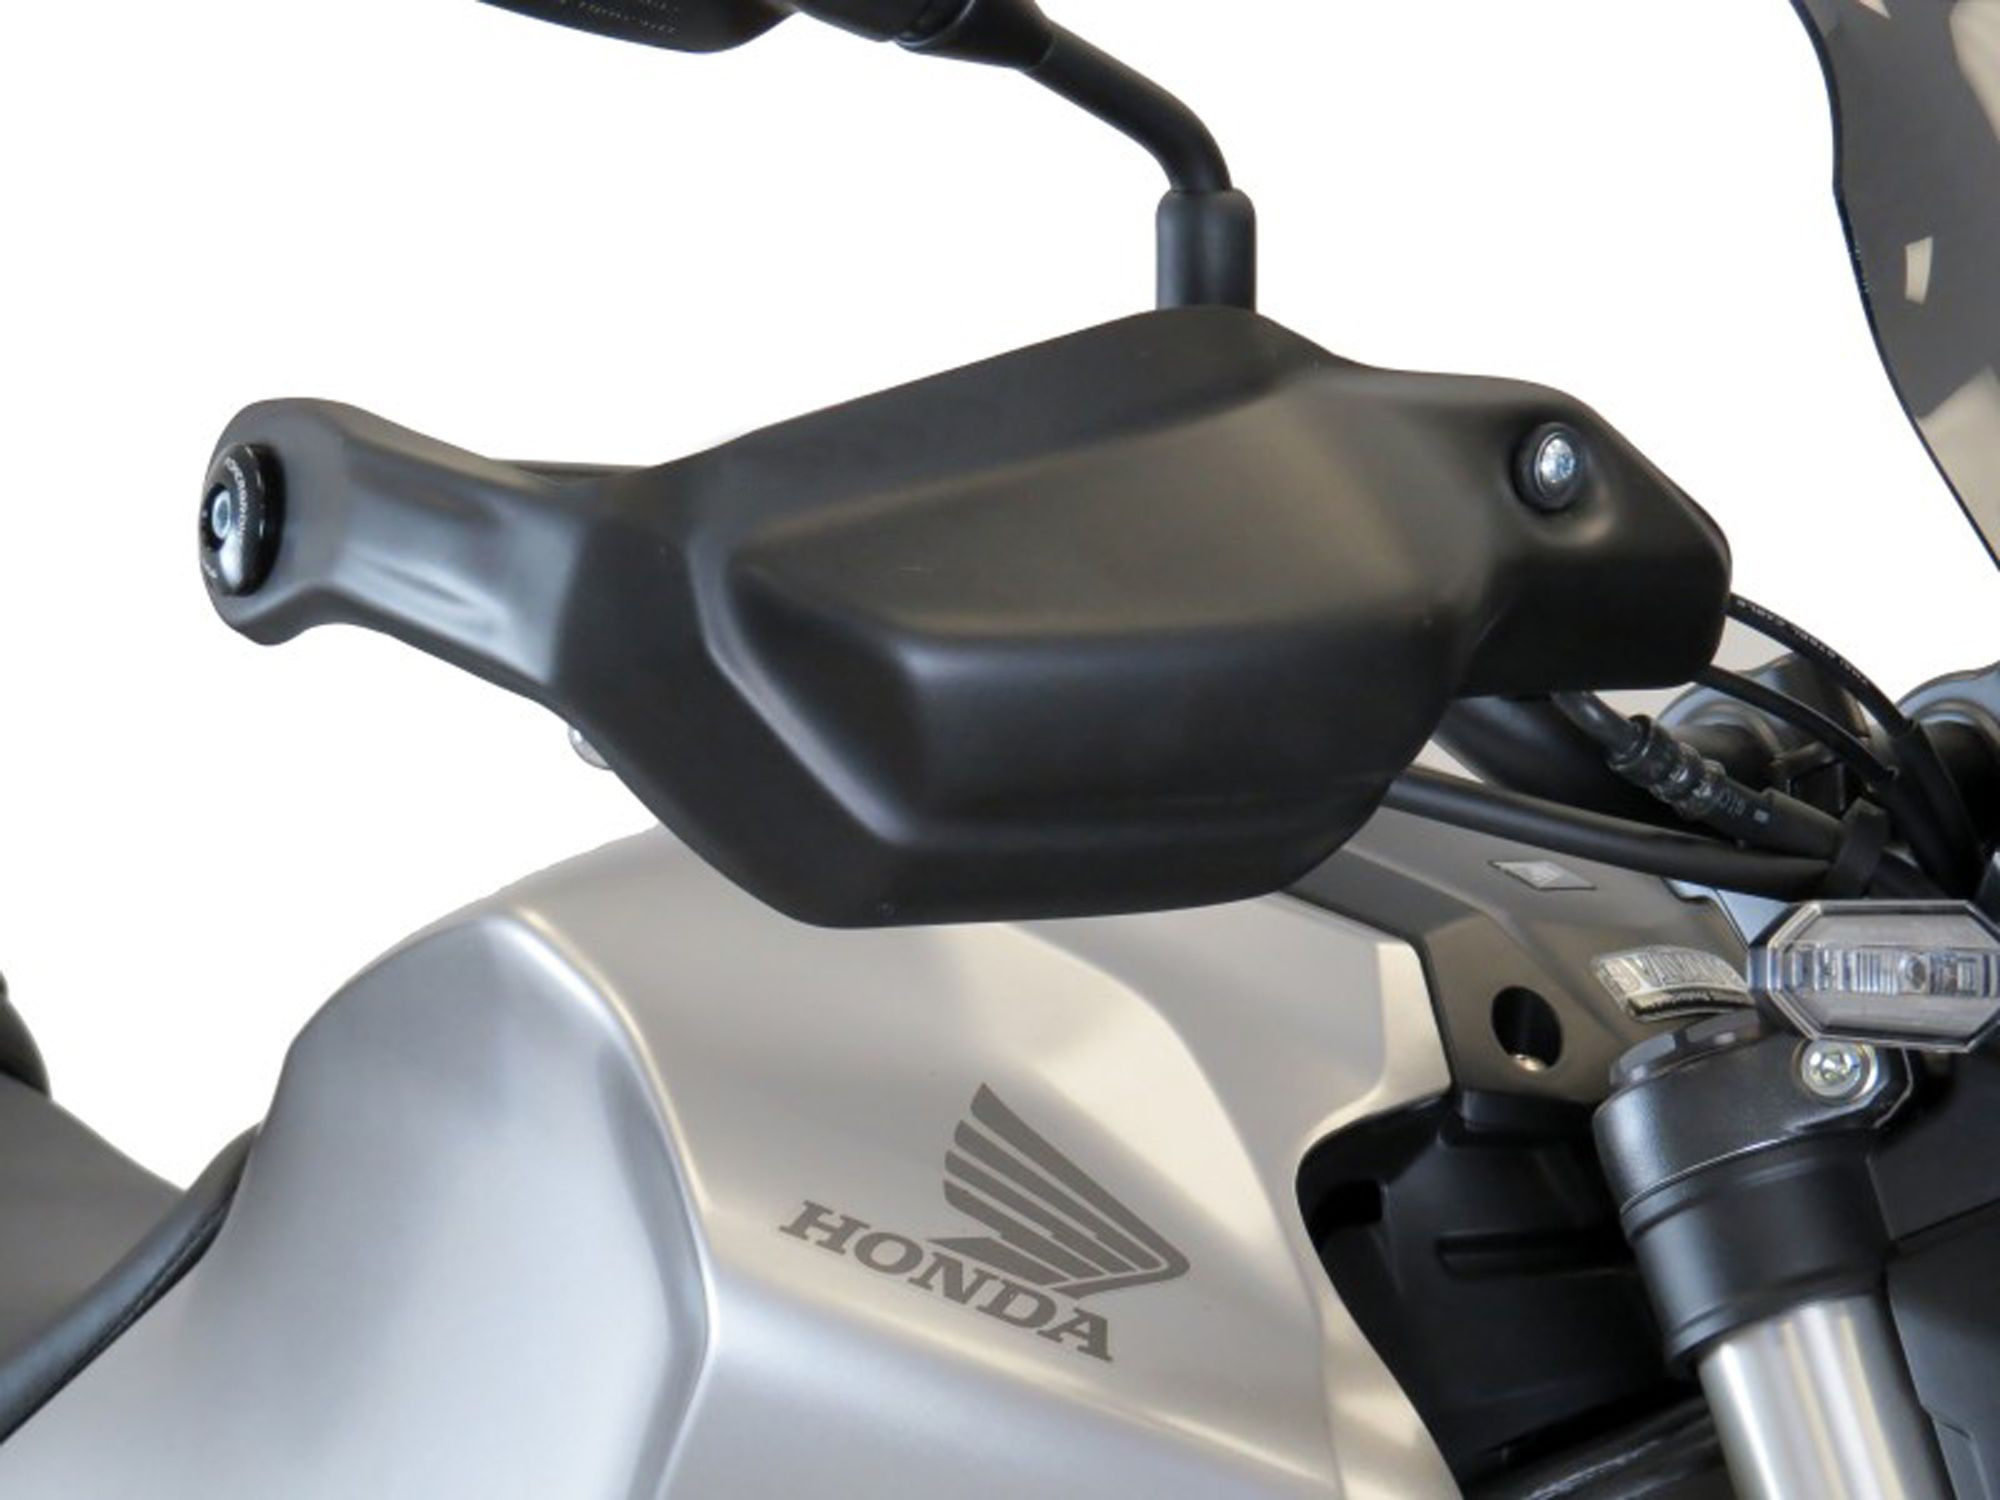 BODYSTYLE Handprotektoren schwarz-matt passt für Honda CB125R, CB300R